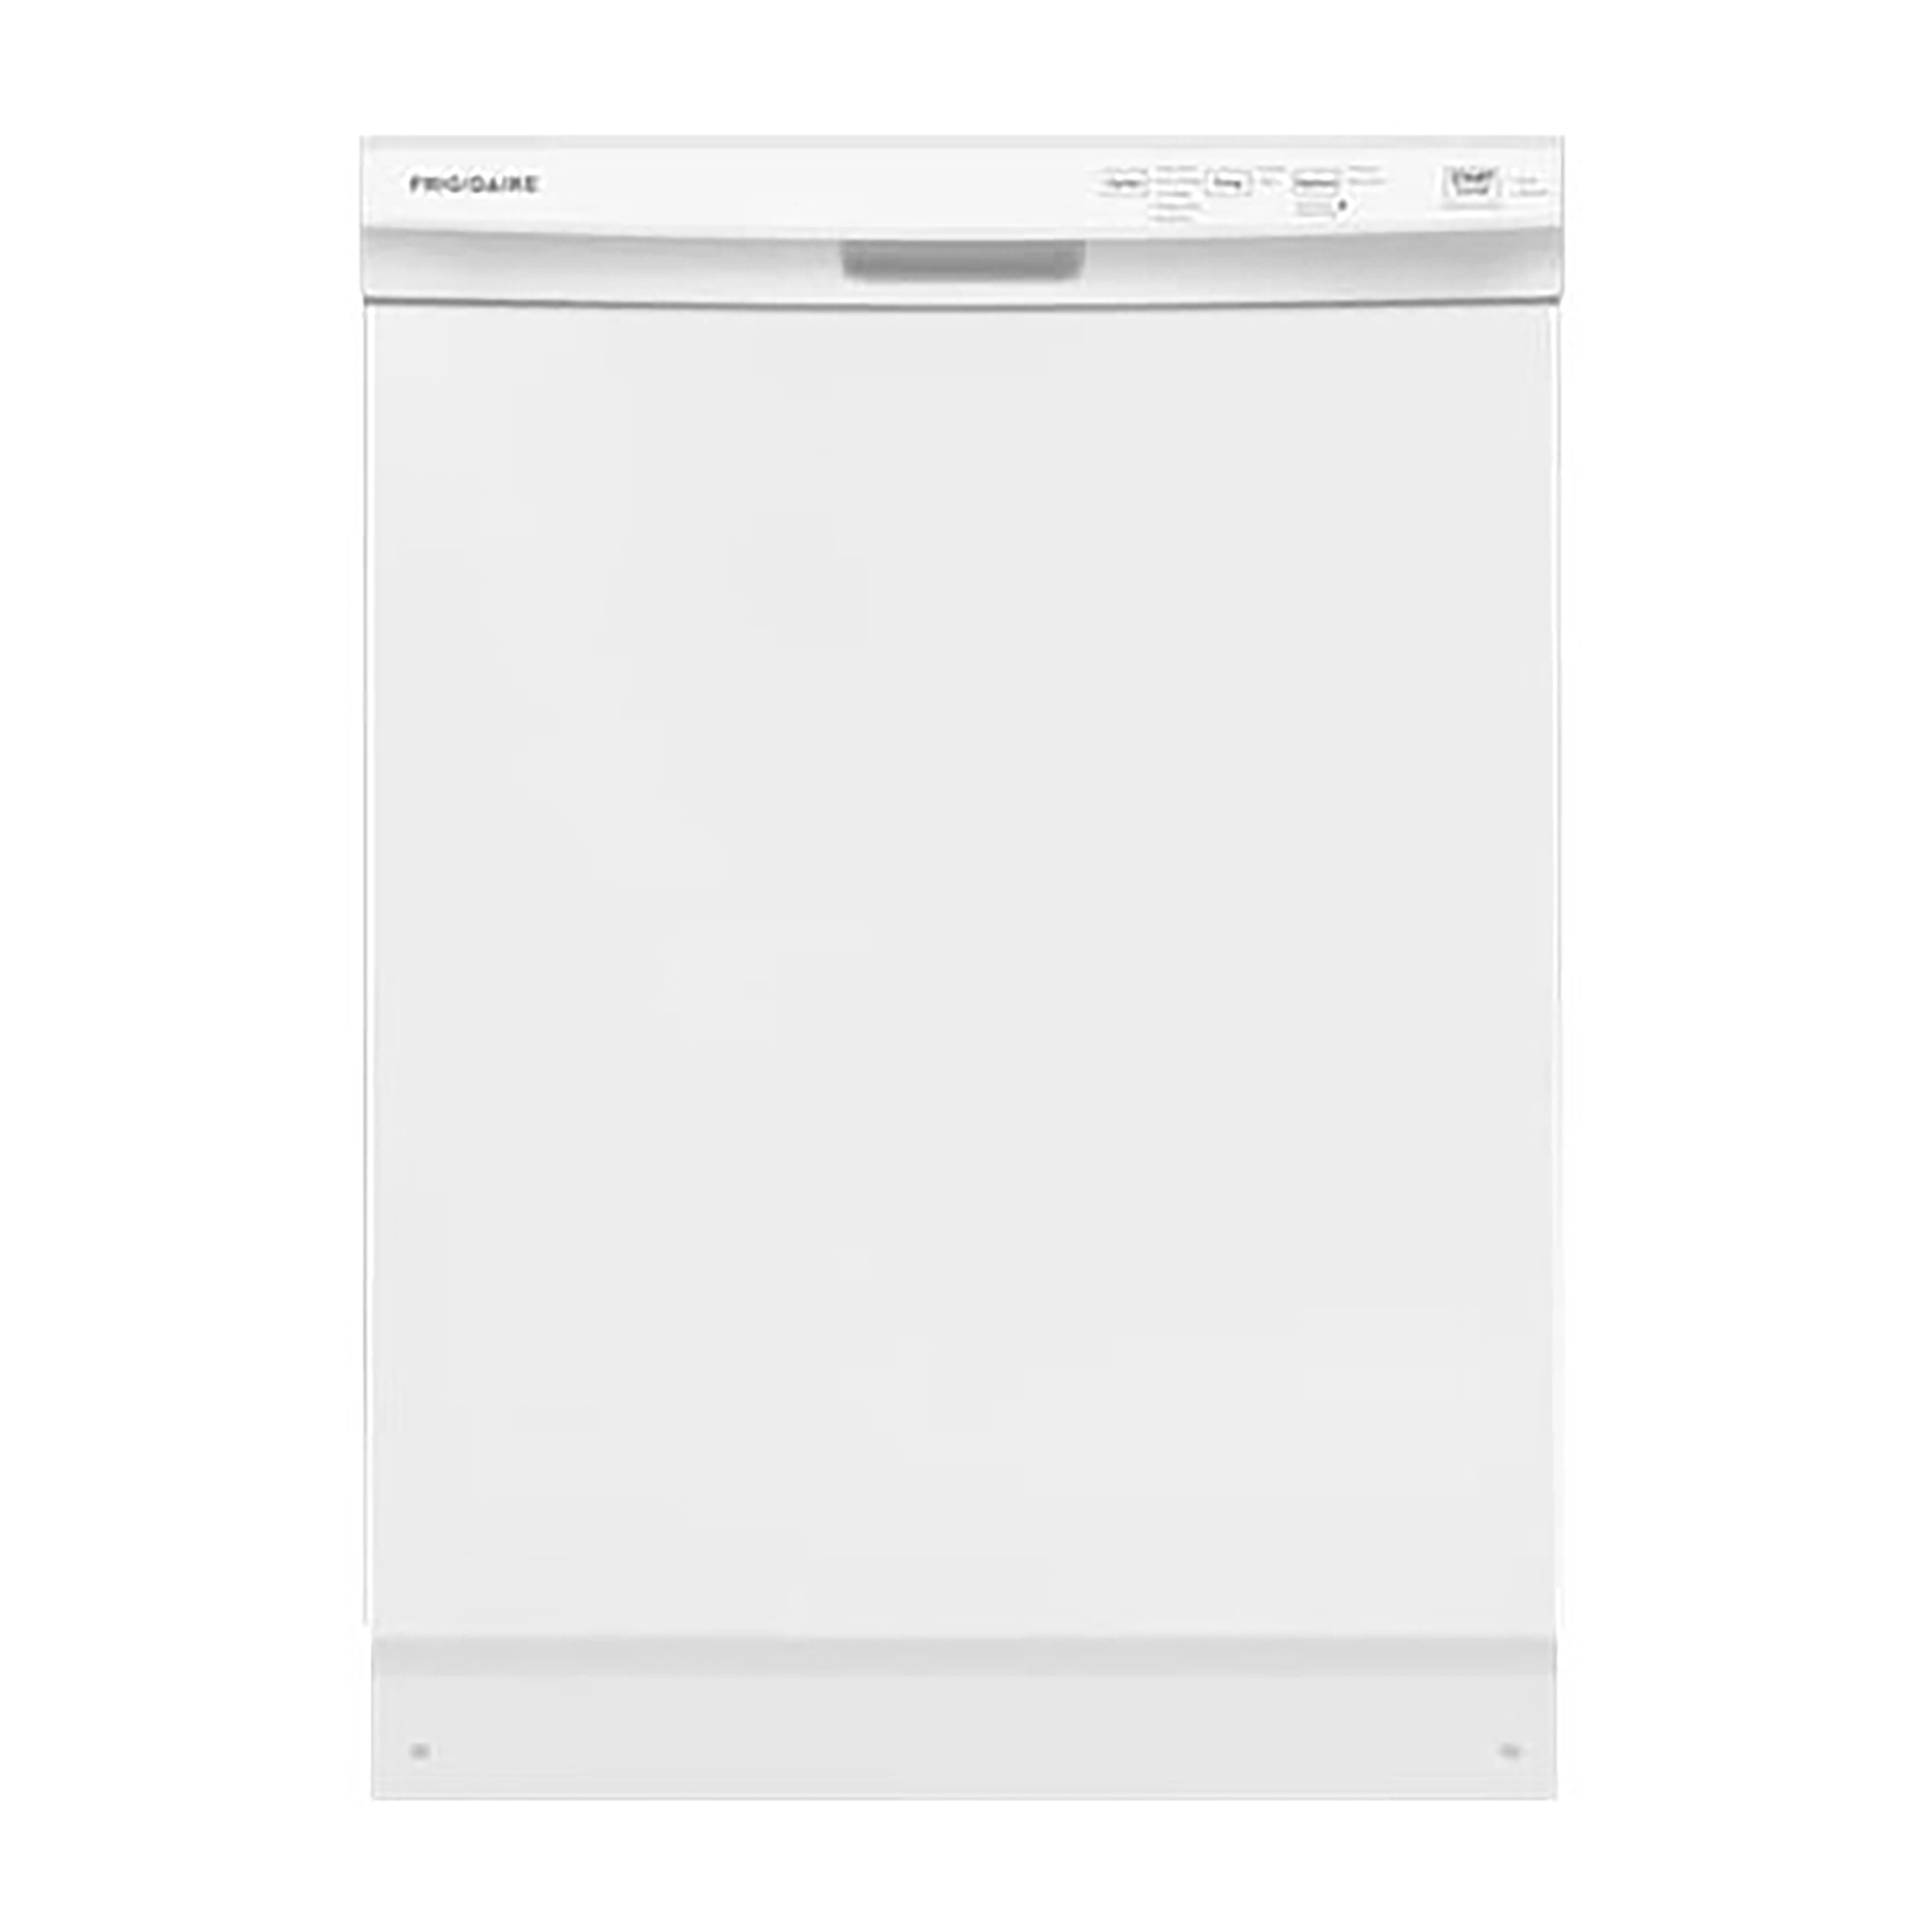 Frigidaire FFCD2418UW 24 inch Built-In Dishwasher - White